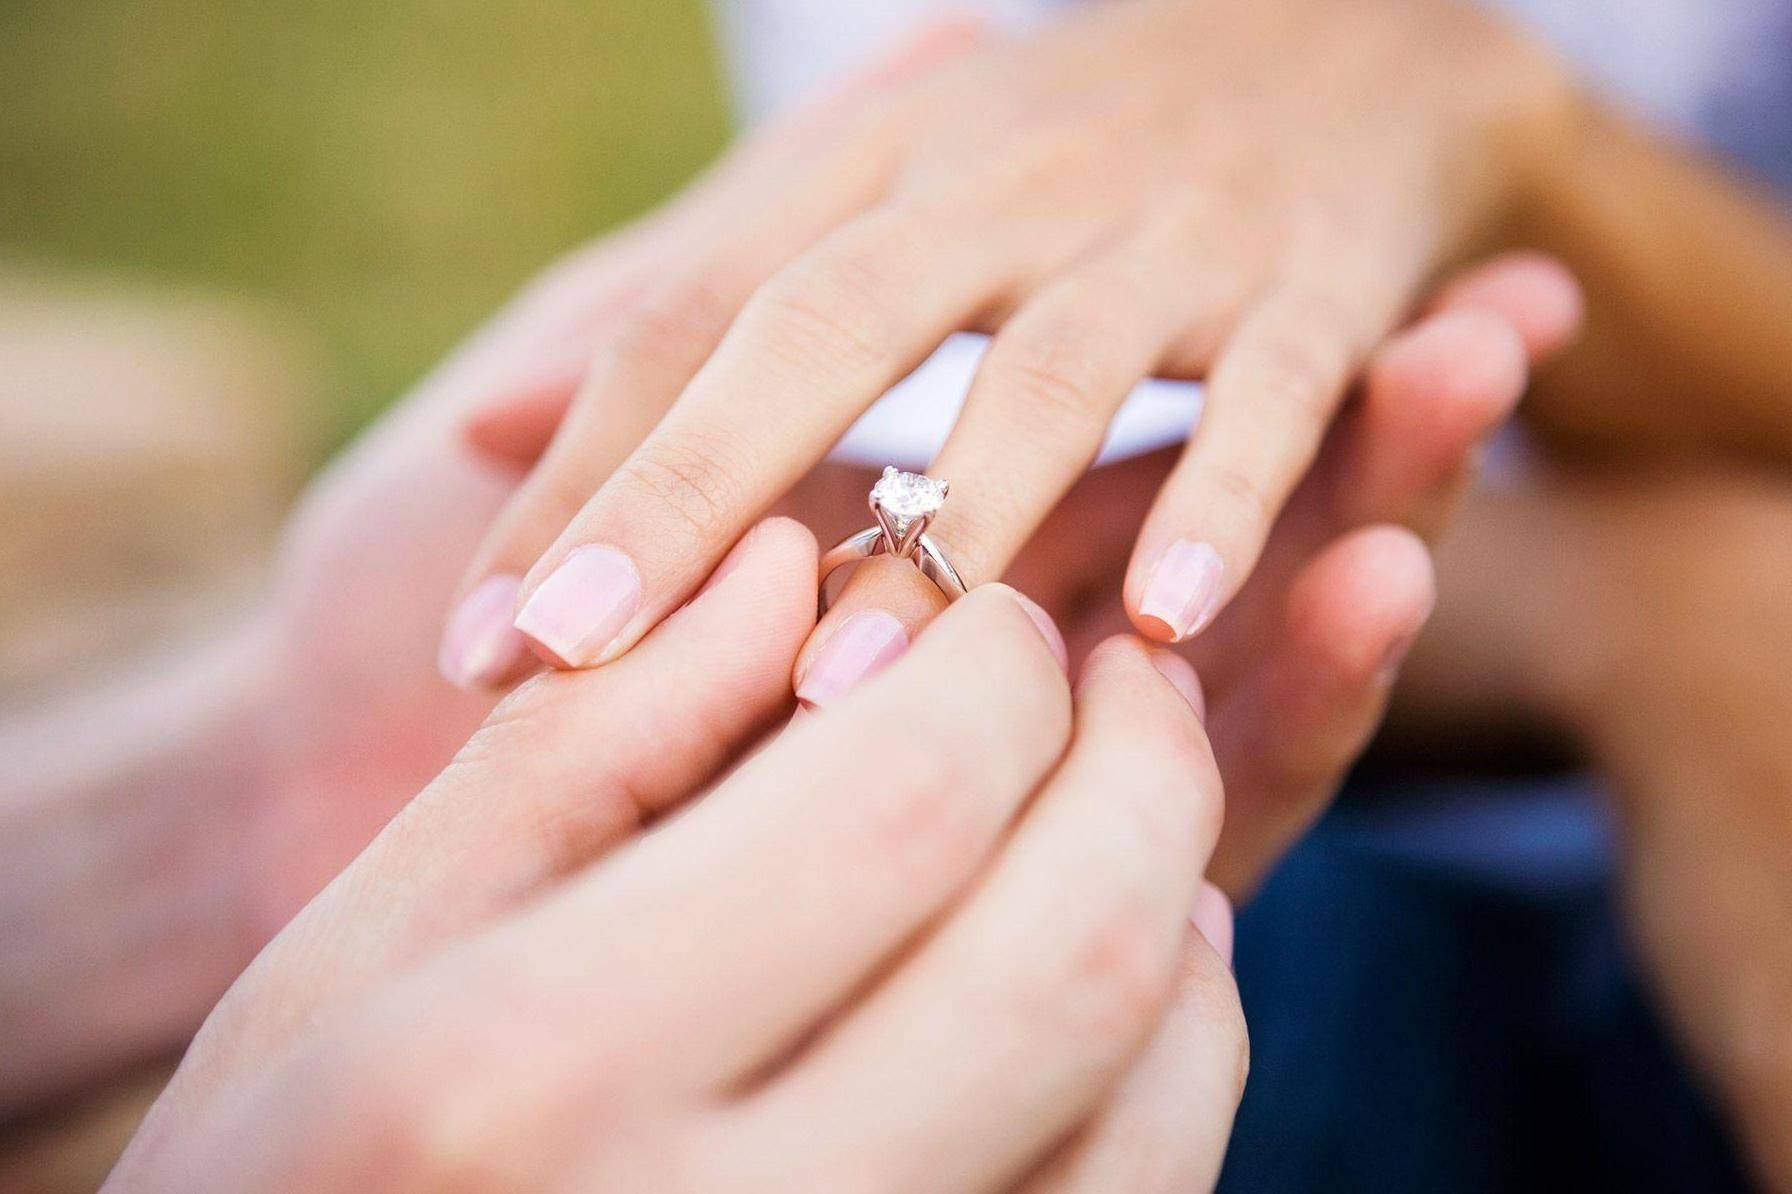 Какое кольцо дарят девушке, когда делают предложение выйти замуж? на какую руку и какой палец одевают кольцо девушке при предложении руки и сердца? самые красивые кольца для предложения руки и сердца: